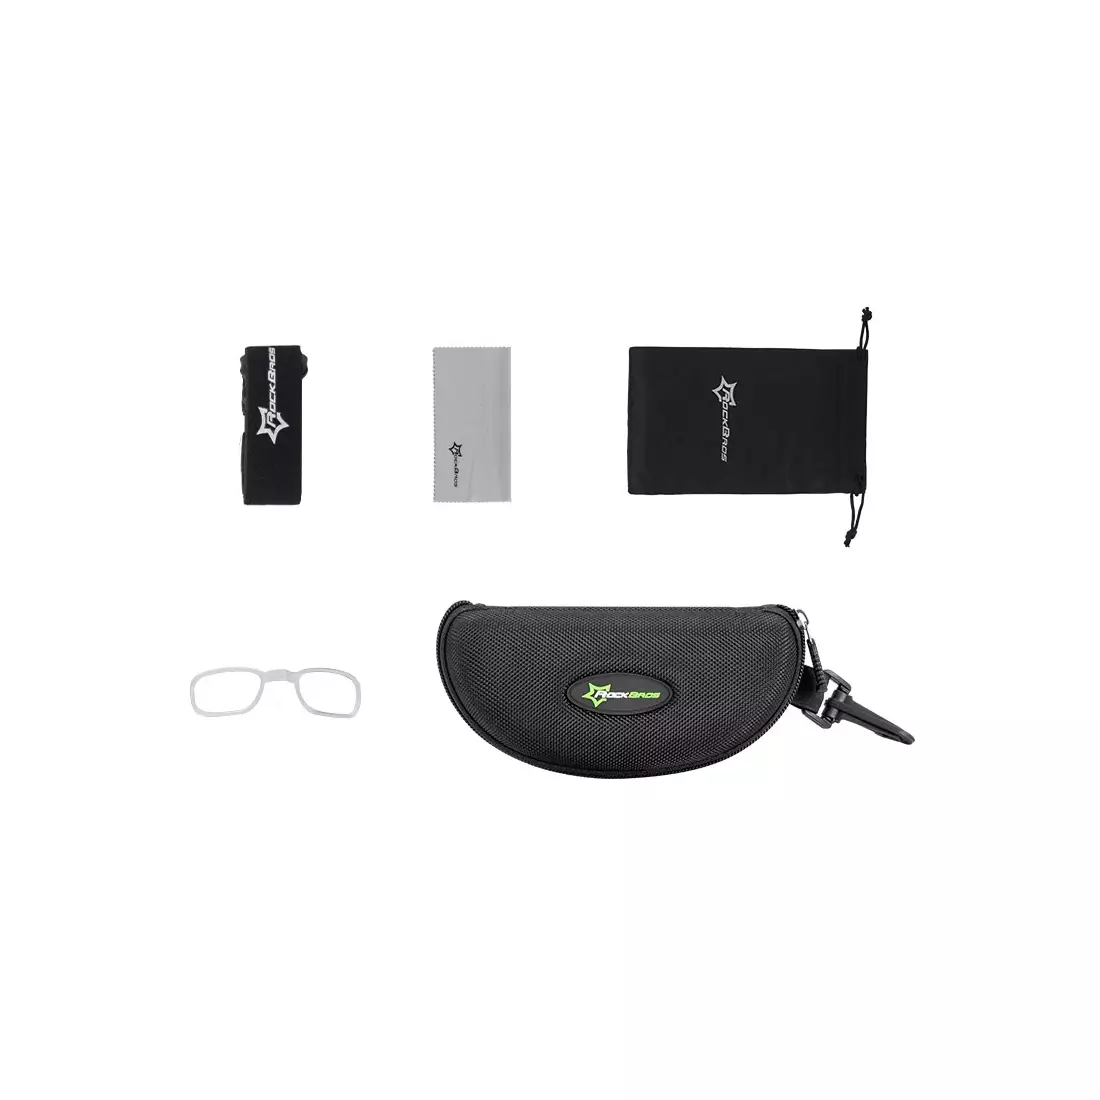 Rockbros sportovní brýle s fotochromatickou + korekční vložkou black 10143